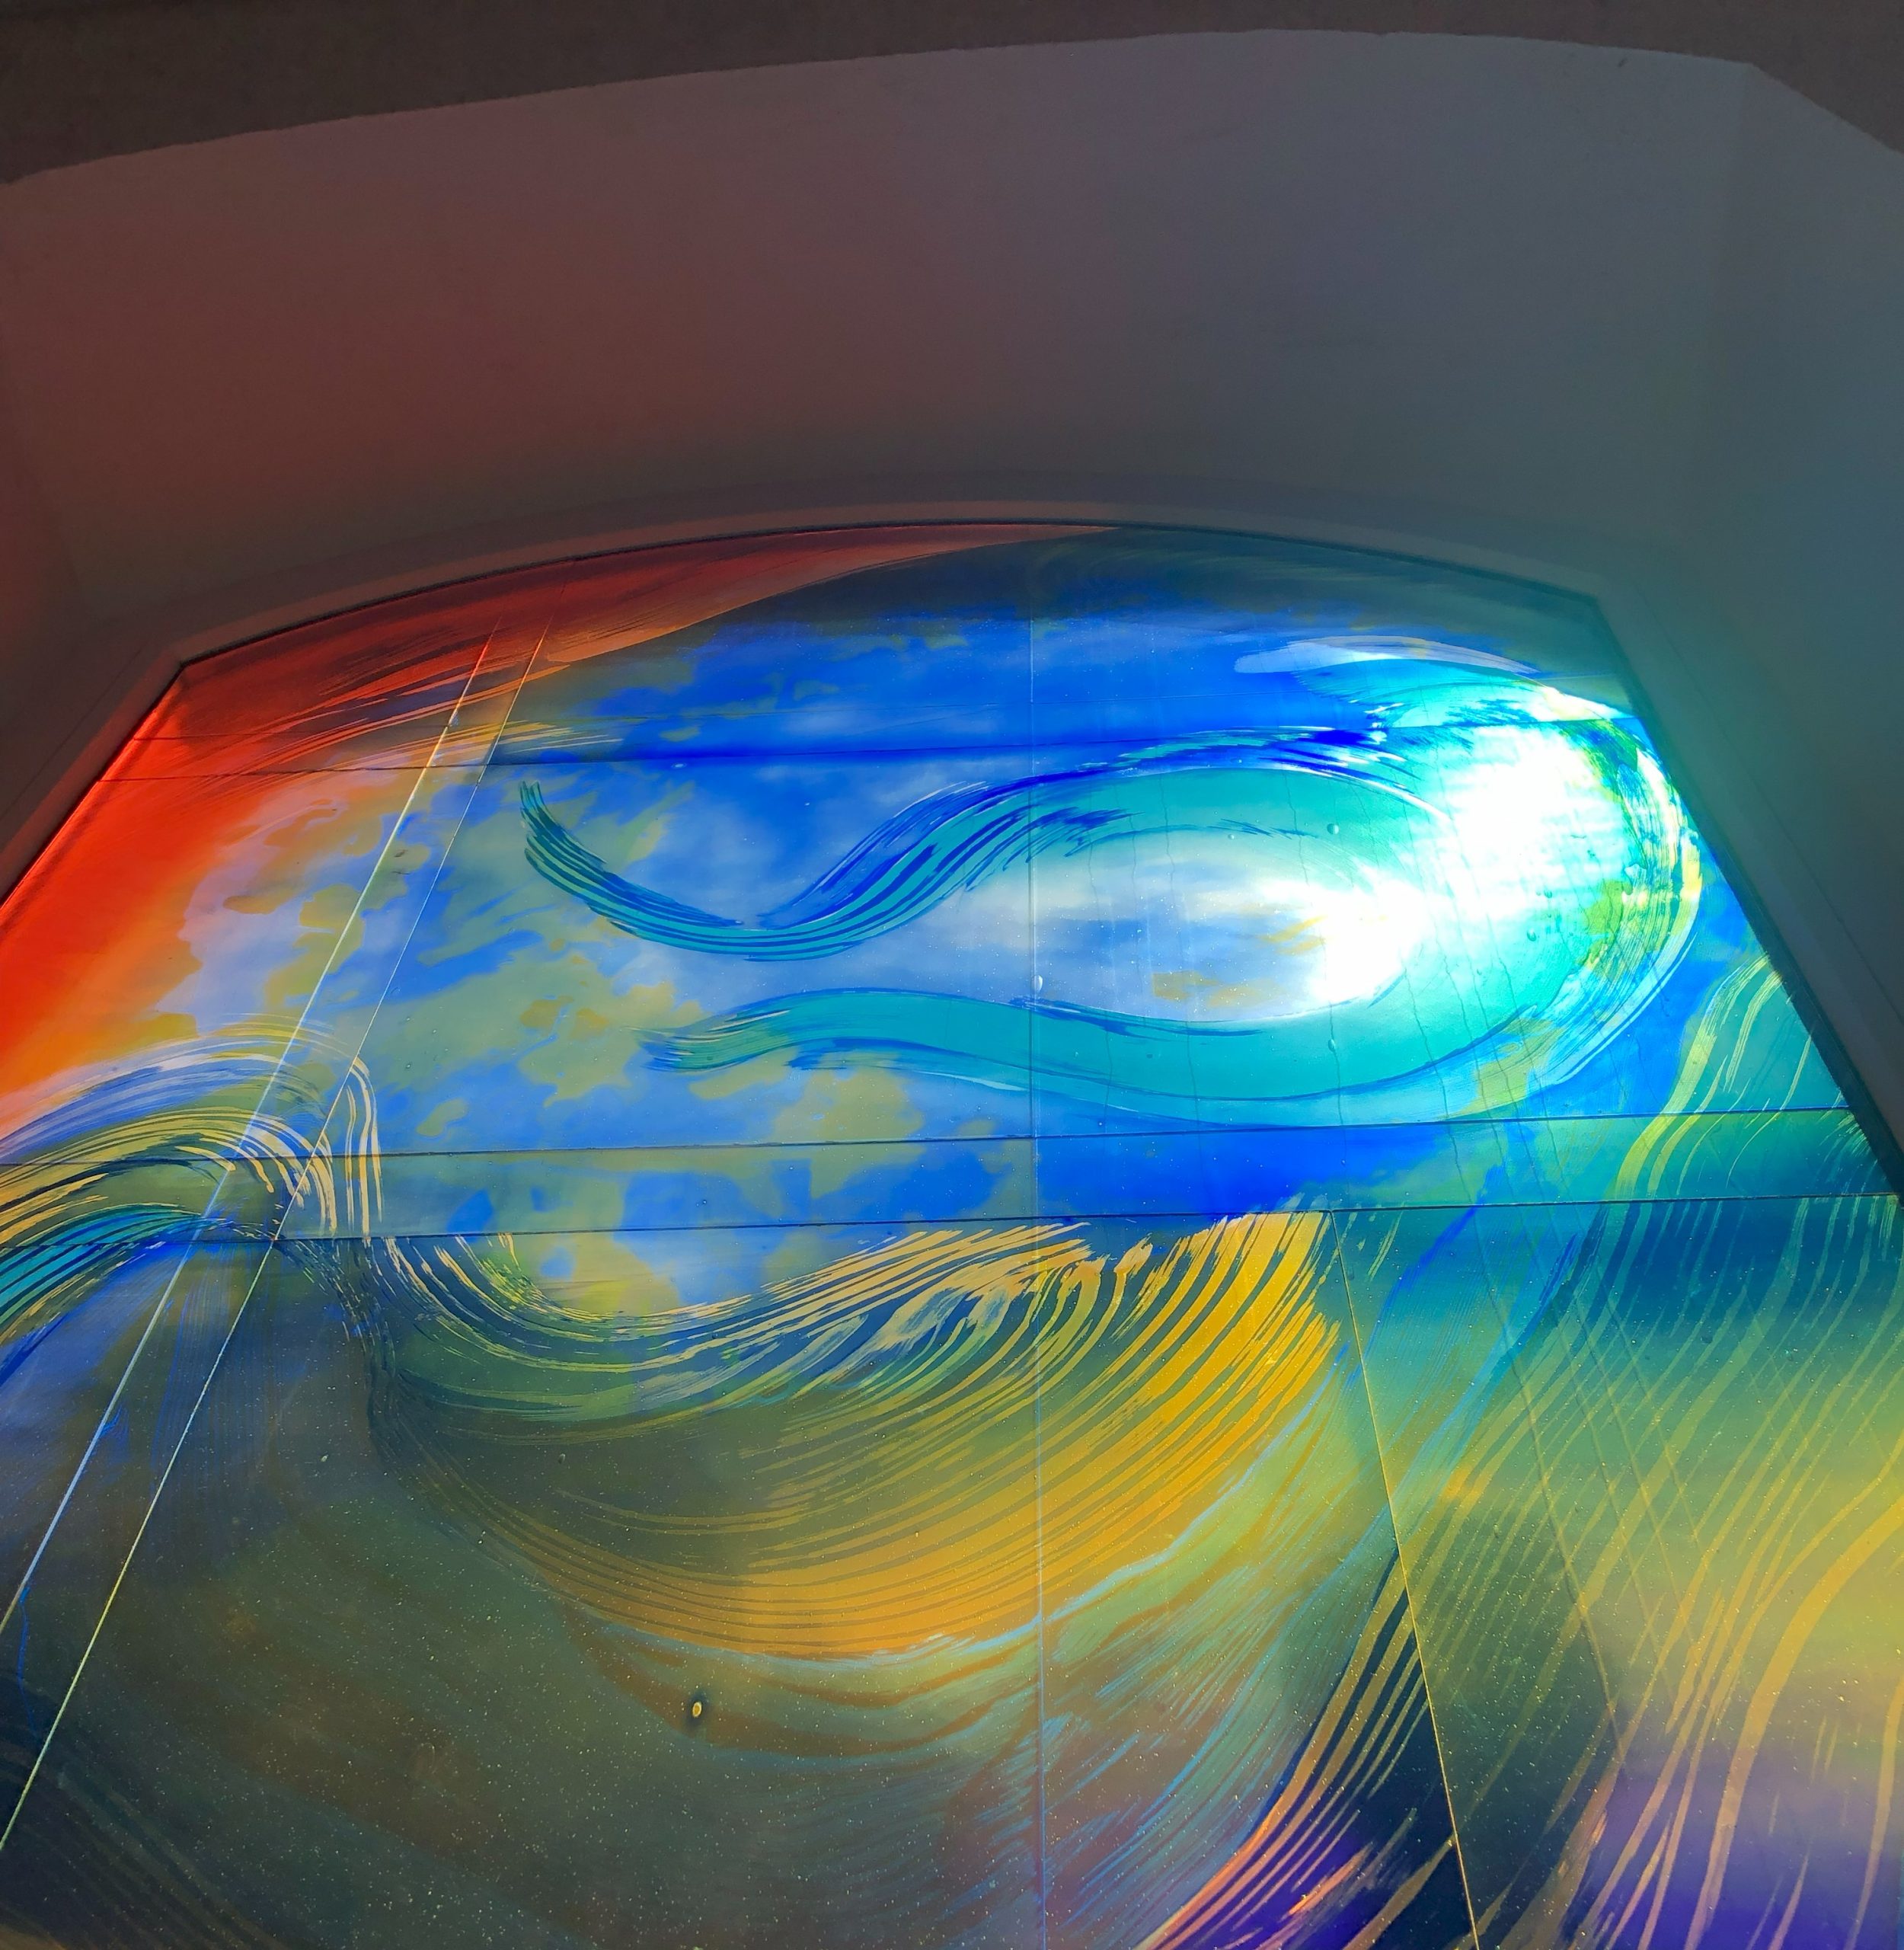 Farbenfrohes Glaskunst-Fenster von Derix mit geschwungenen Linien in Blau, Orange und Gelb. Das Fenster ist in der Kapelle des Pflegeheims Haus Zoffingen.